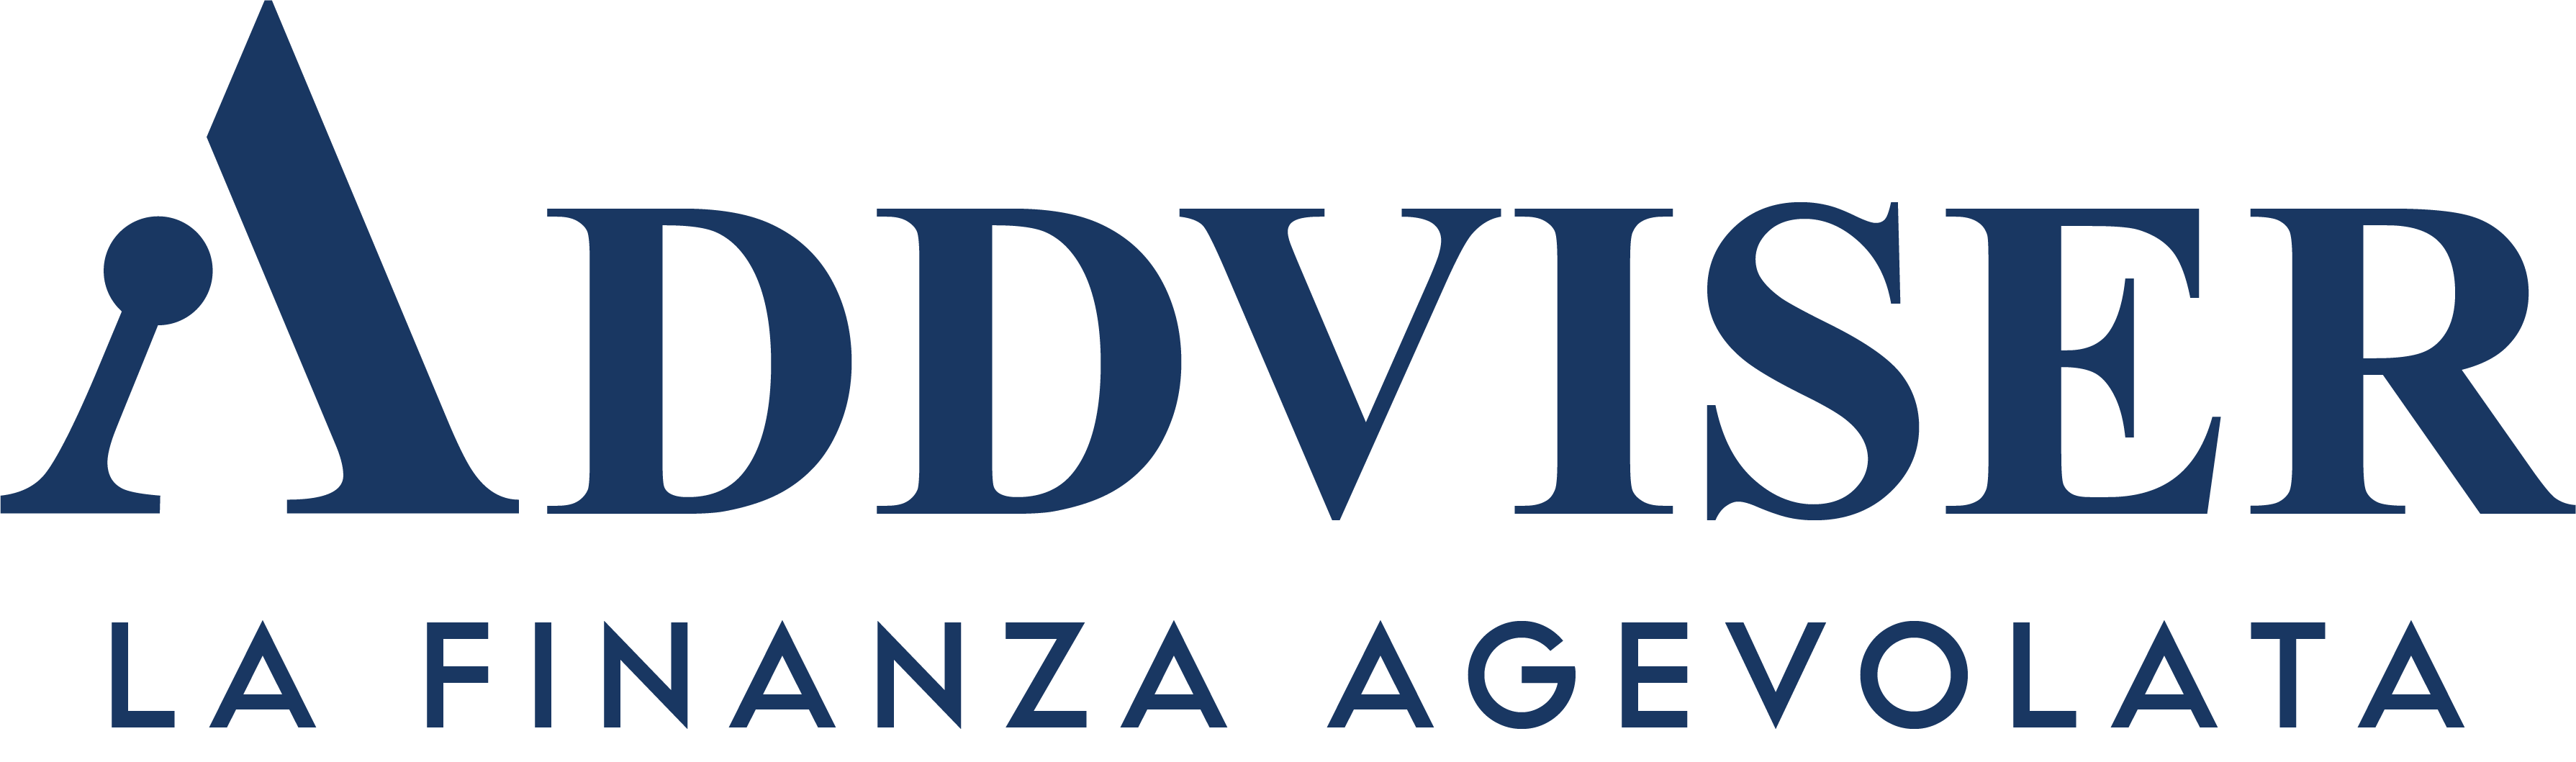 Addviser – La Finanza Agevolata Logo